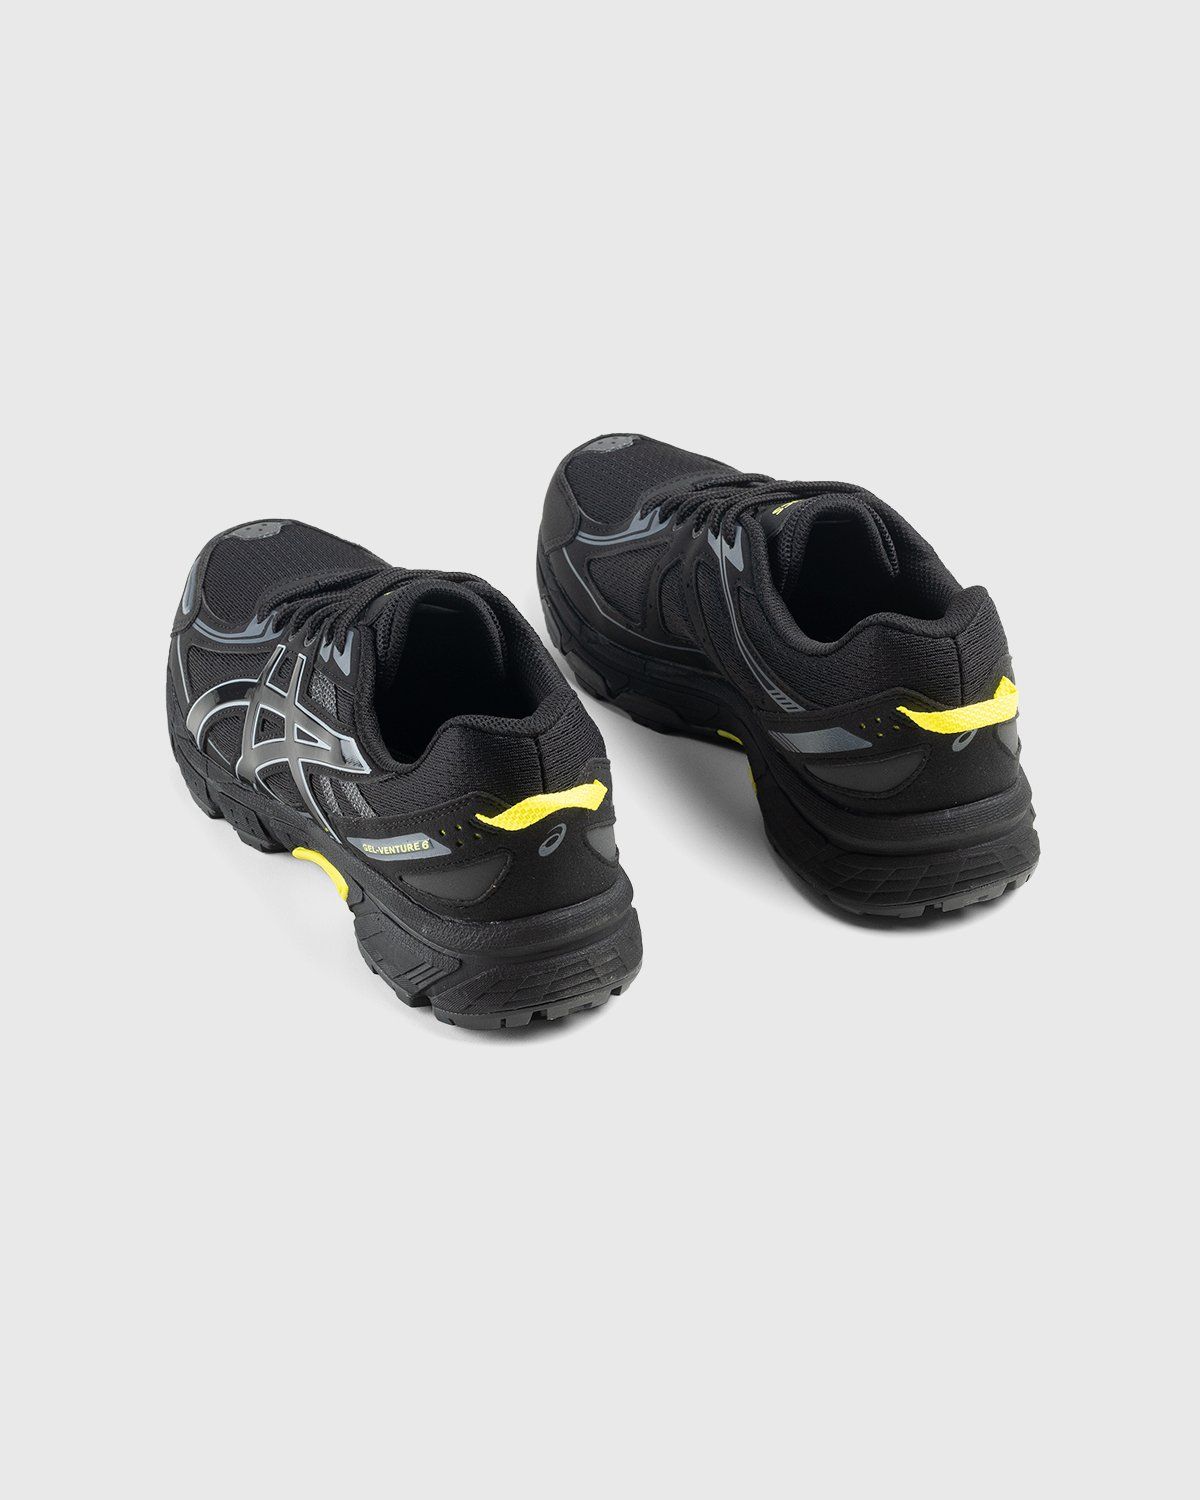 asics – Gel-Venture 6 Black/Black - Sneakers - Black - Image 4